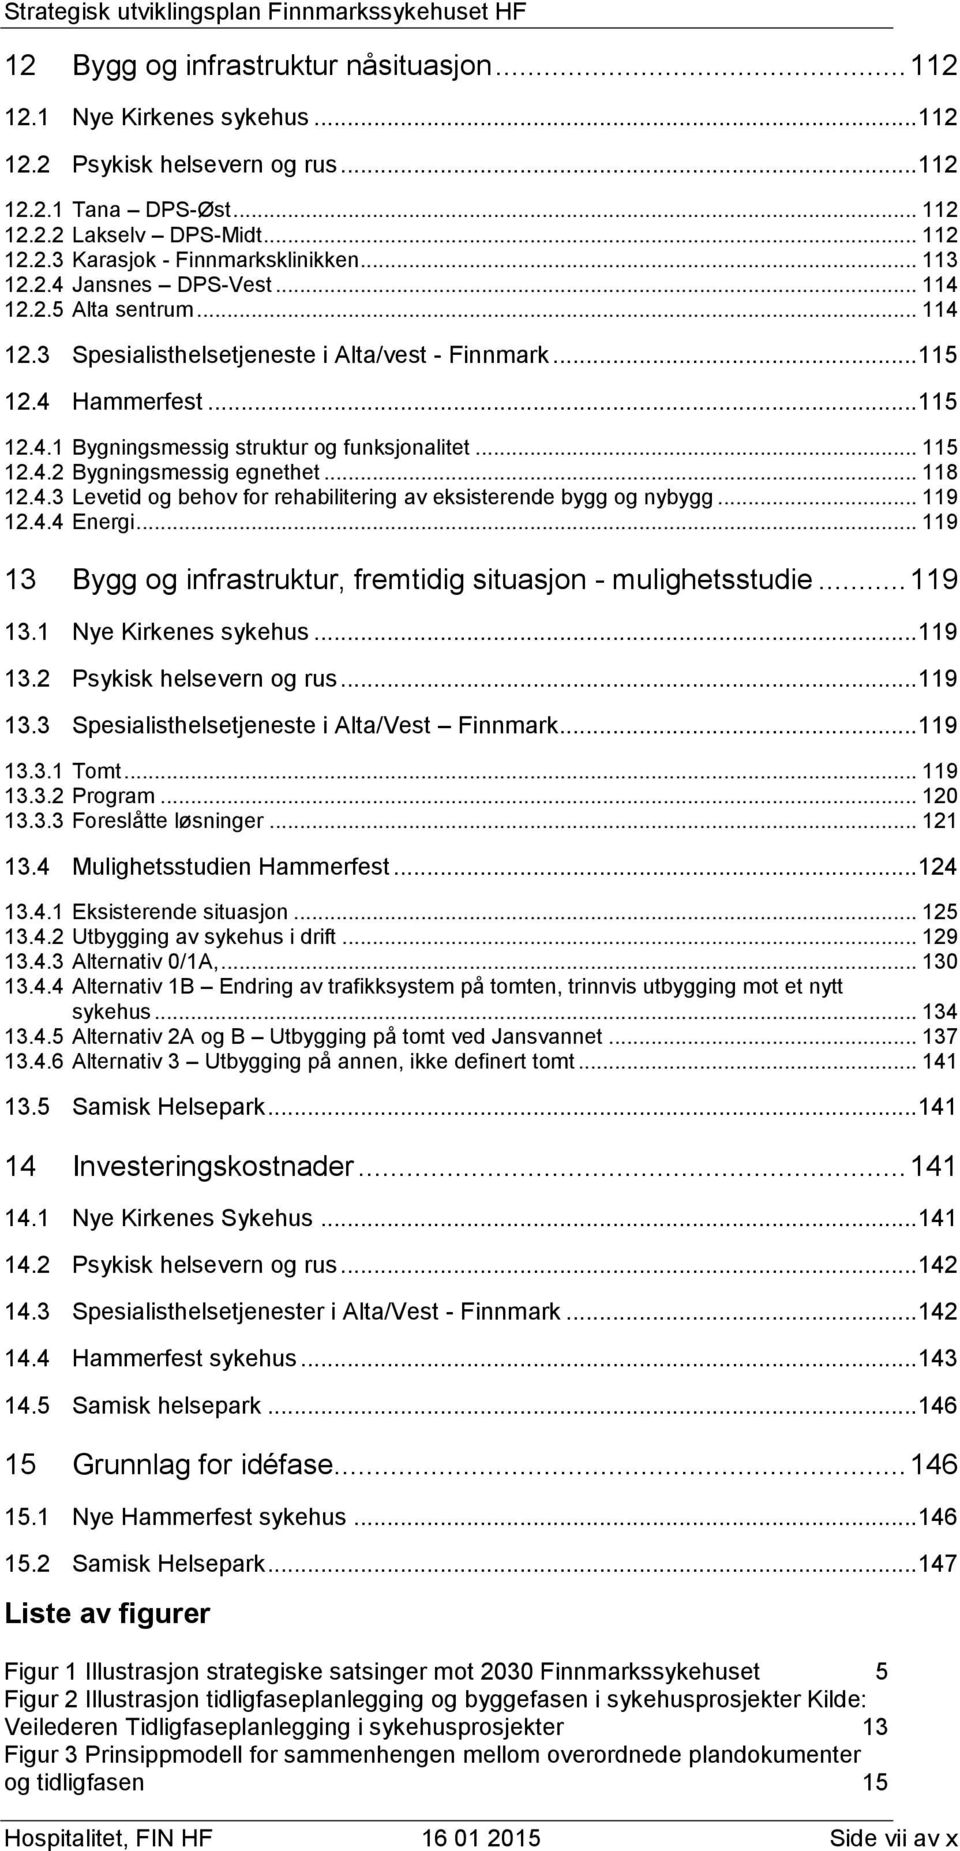 Finnmarkssykehuset Strategisk utviklingsplan for Finnmarkssykehuset HF  inkludert grunnlag for idéfase Nye Hammerfest sykehus - PDF Gratis  nedlasting